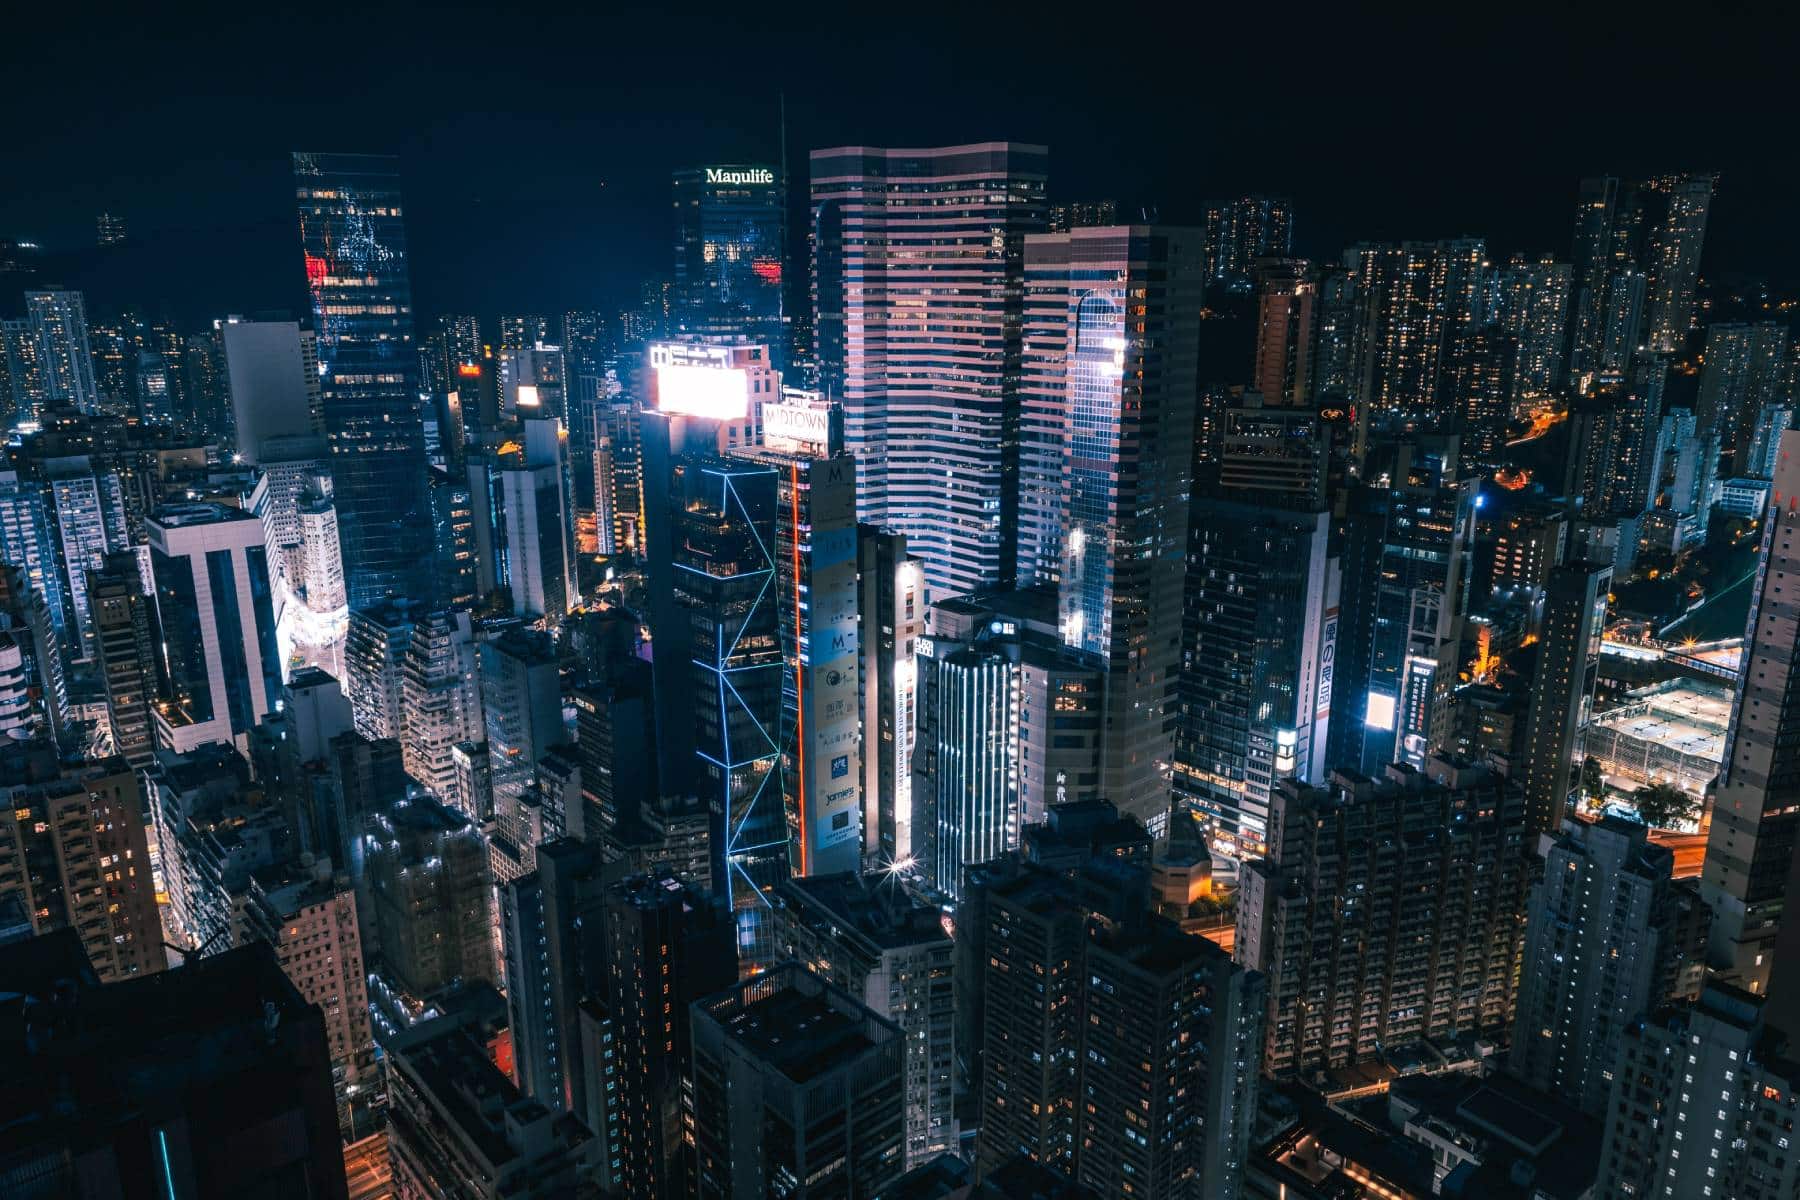 Les gratte-ciel de Hong Kong photographiés de nuit.